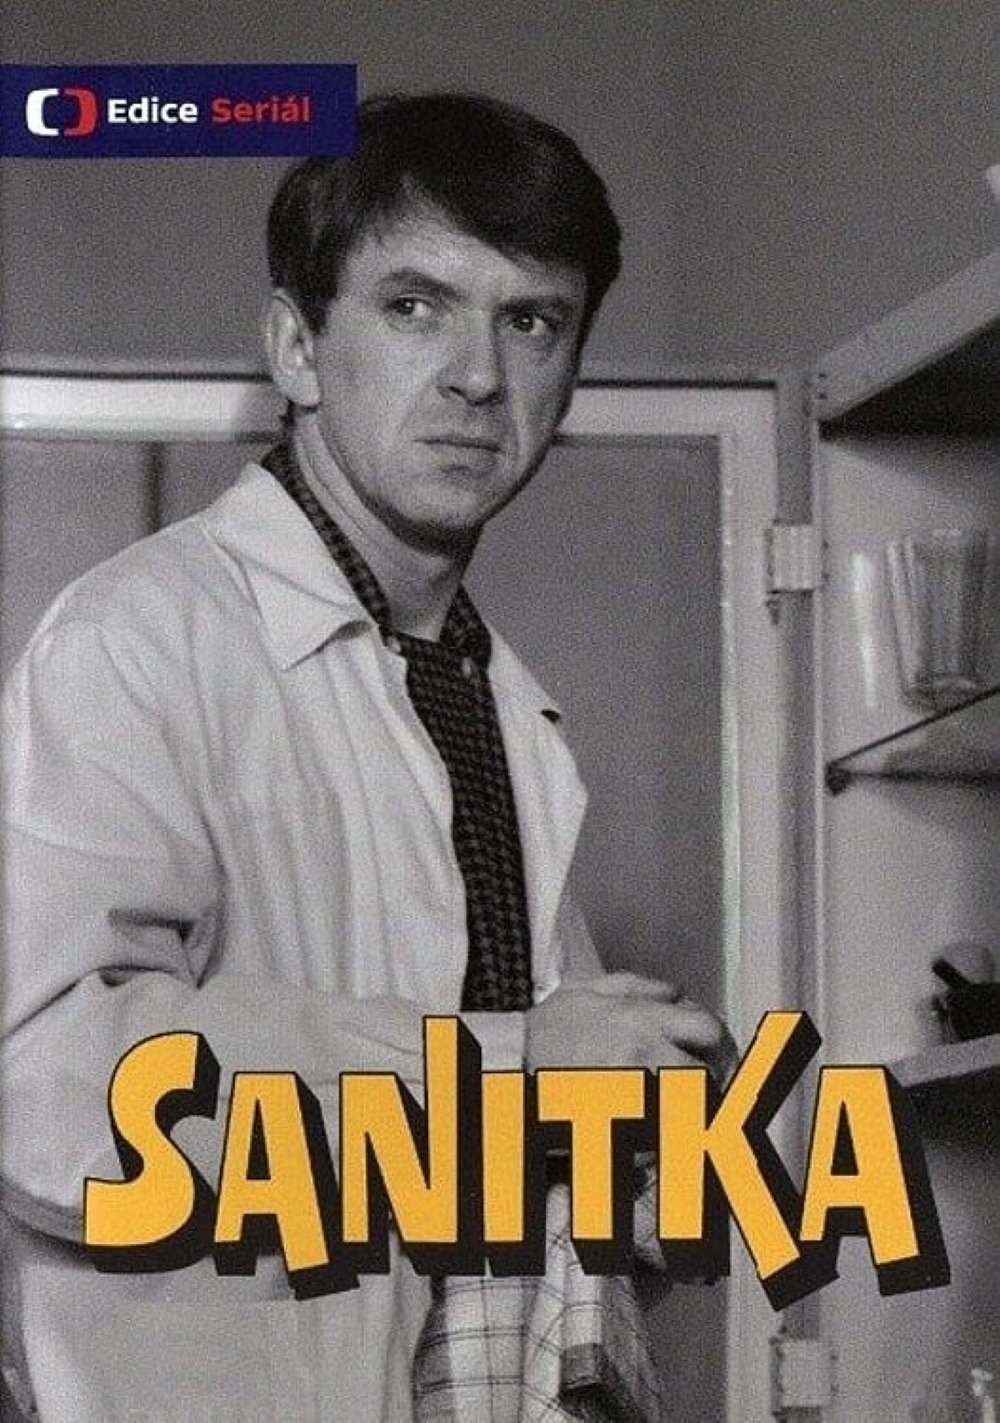 Plakát pro film “Sanitka”